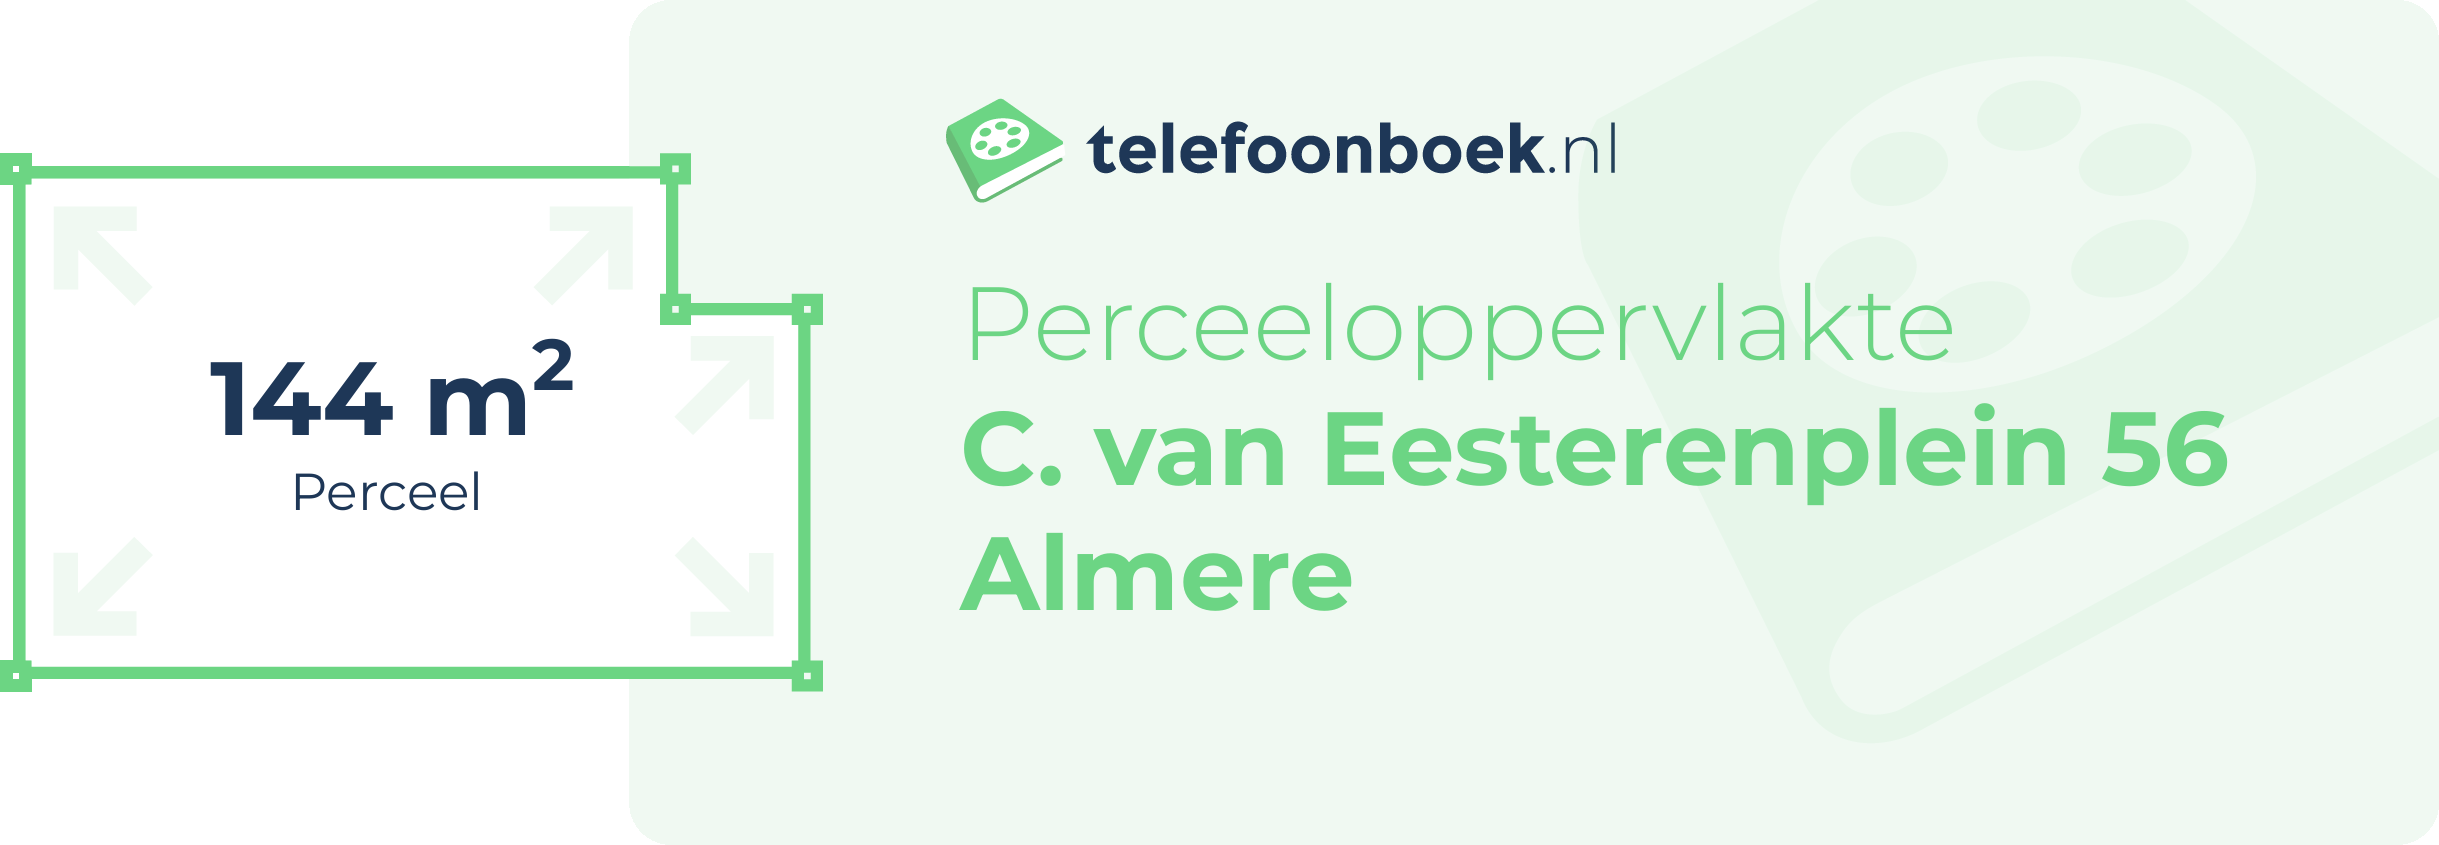 Perceeloppervlakte C. Van Eesterenplein 56 Almere